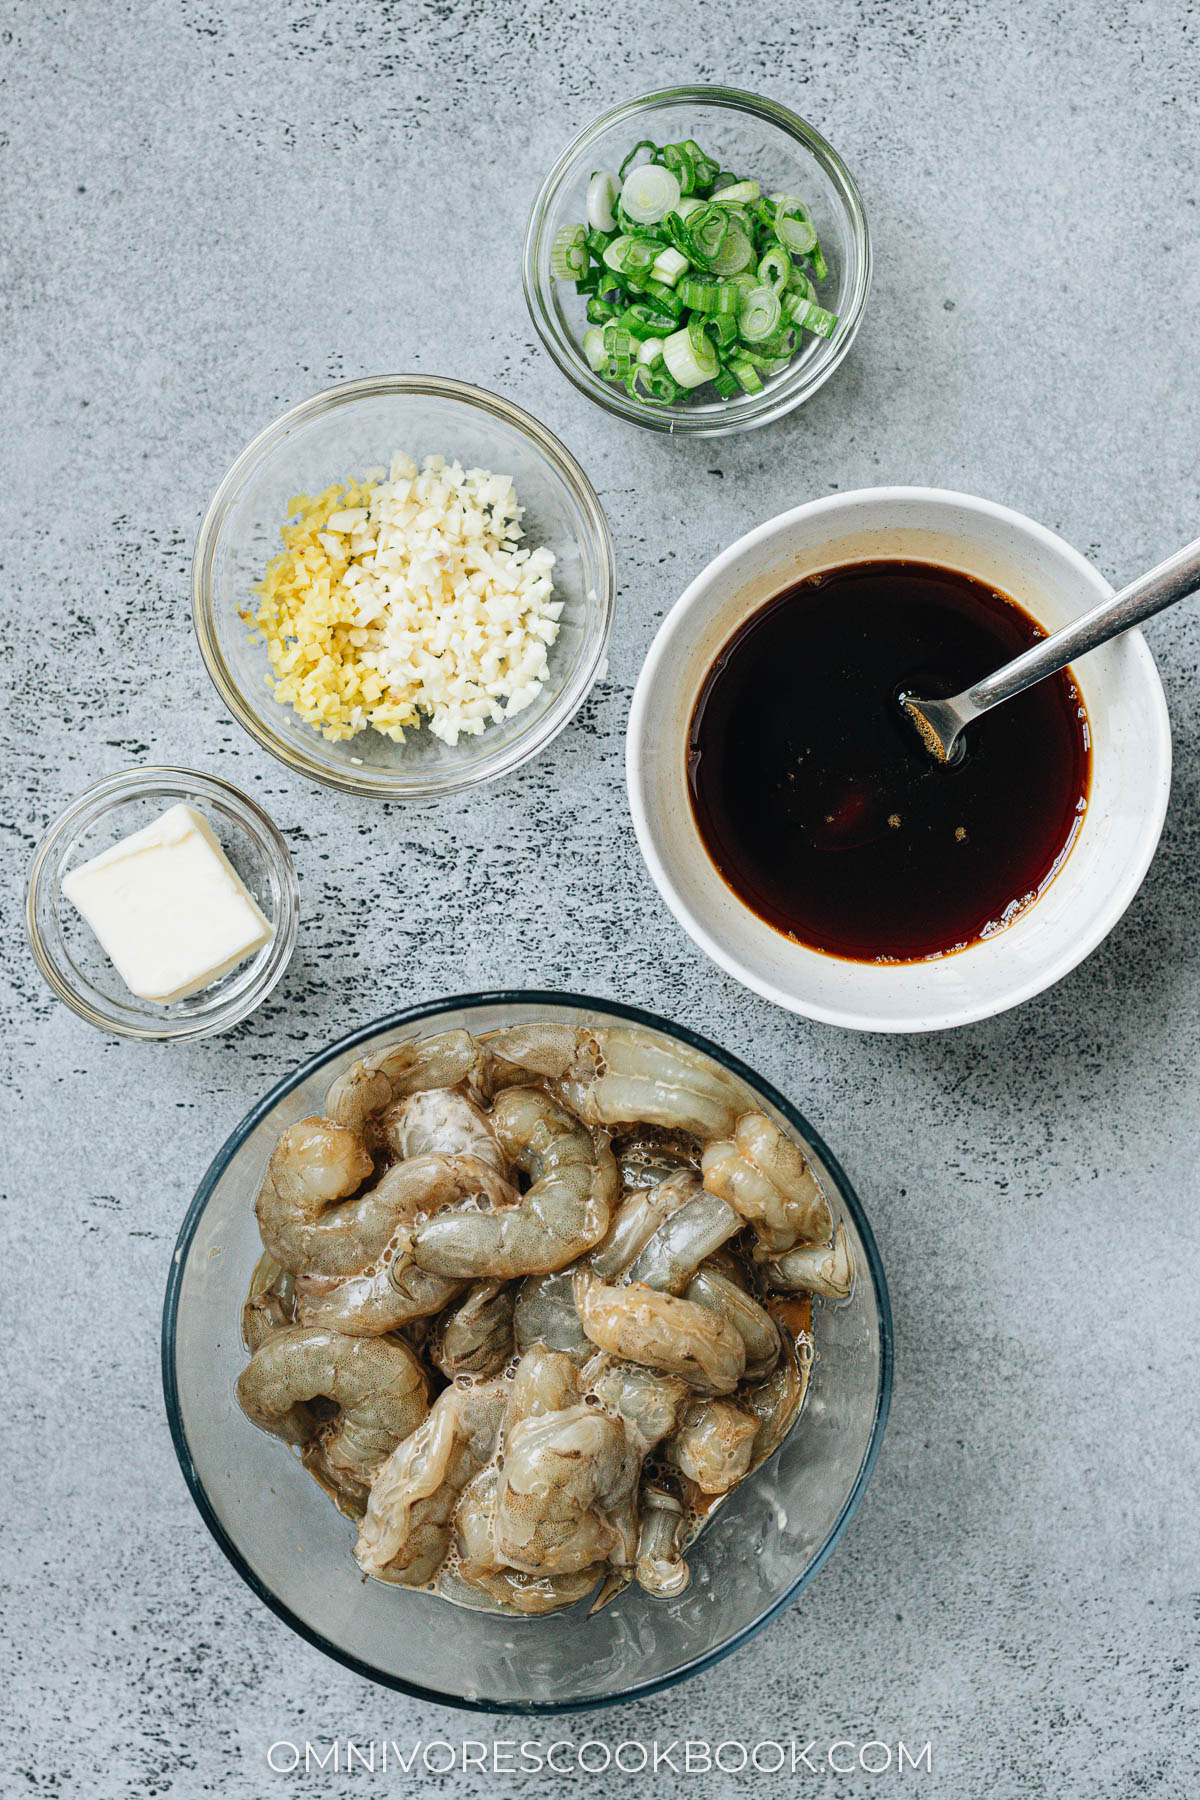 Ingredients for making honey garlic shrimp